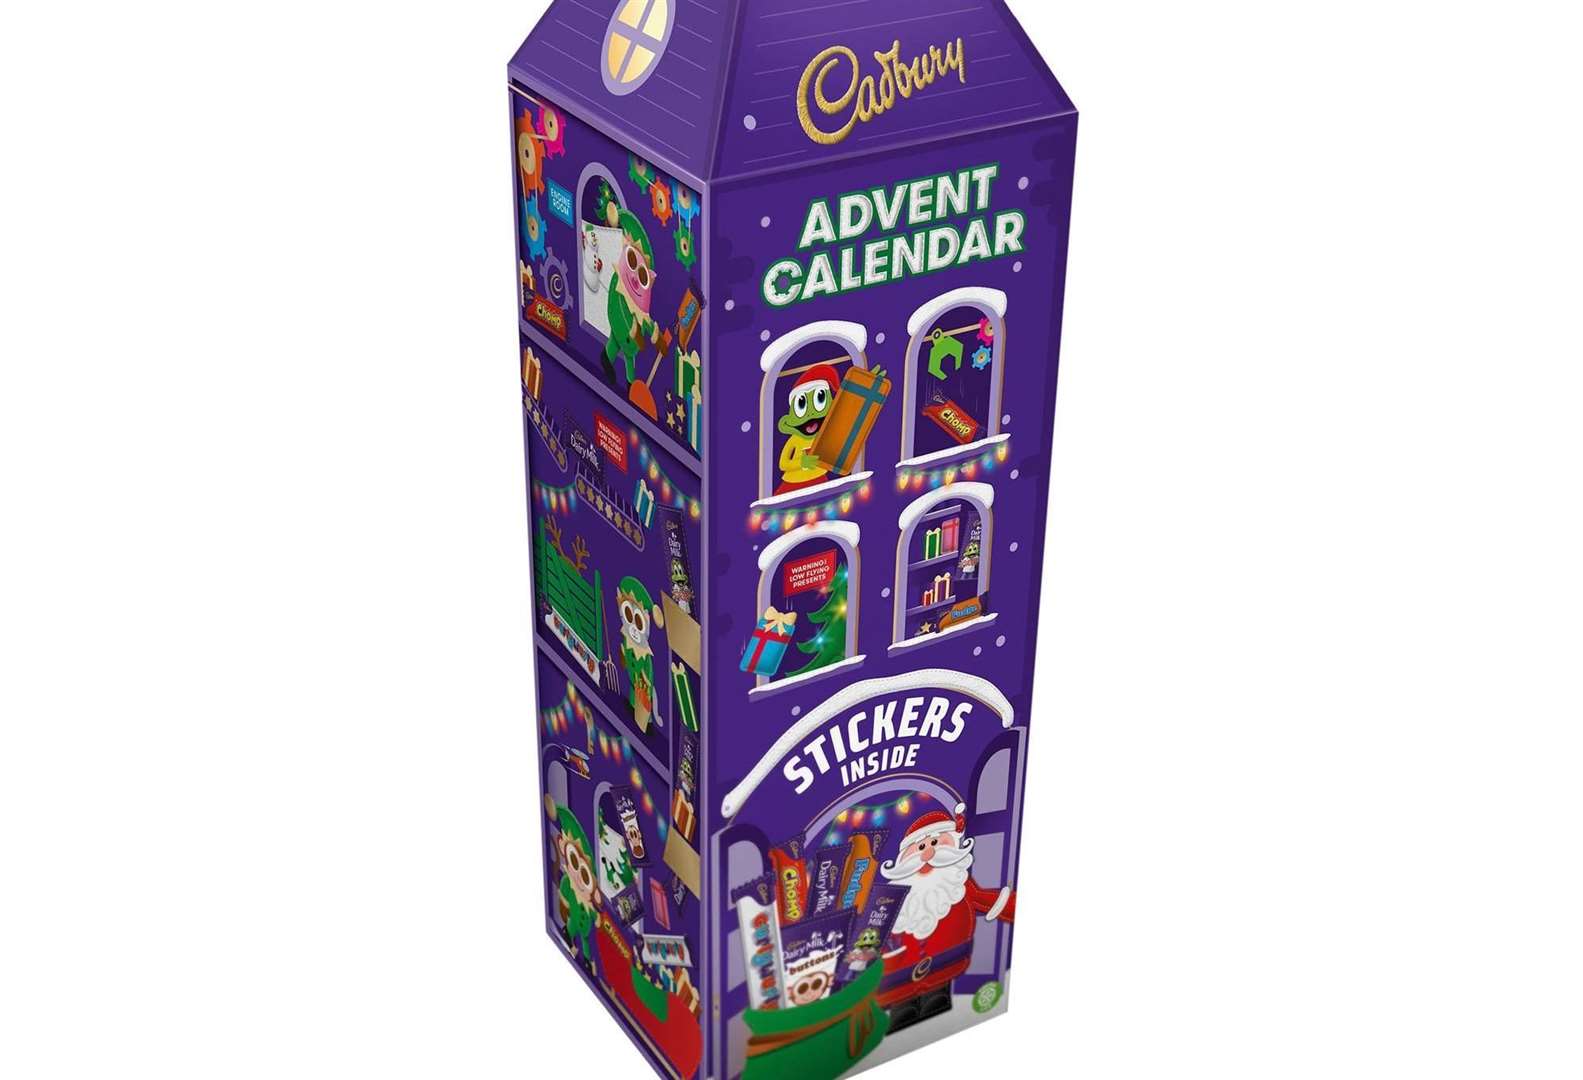 Cadbury once again has a 3D advent calendar this year